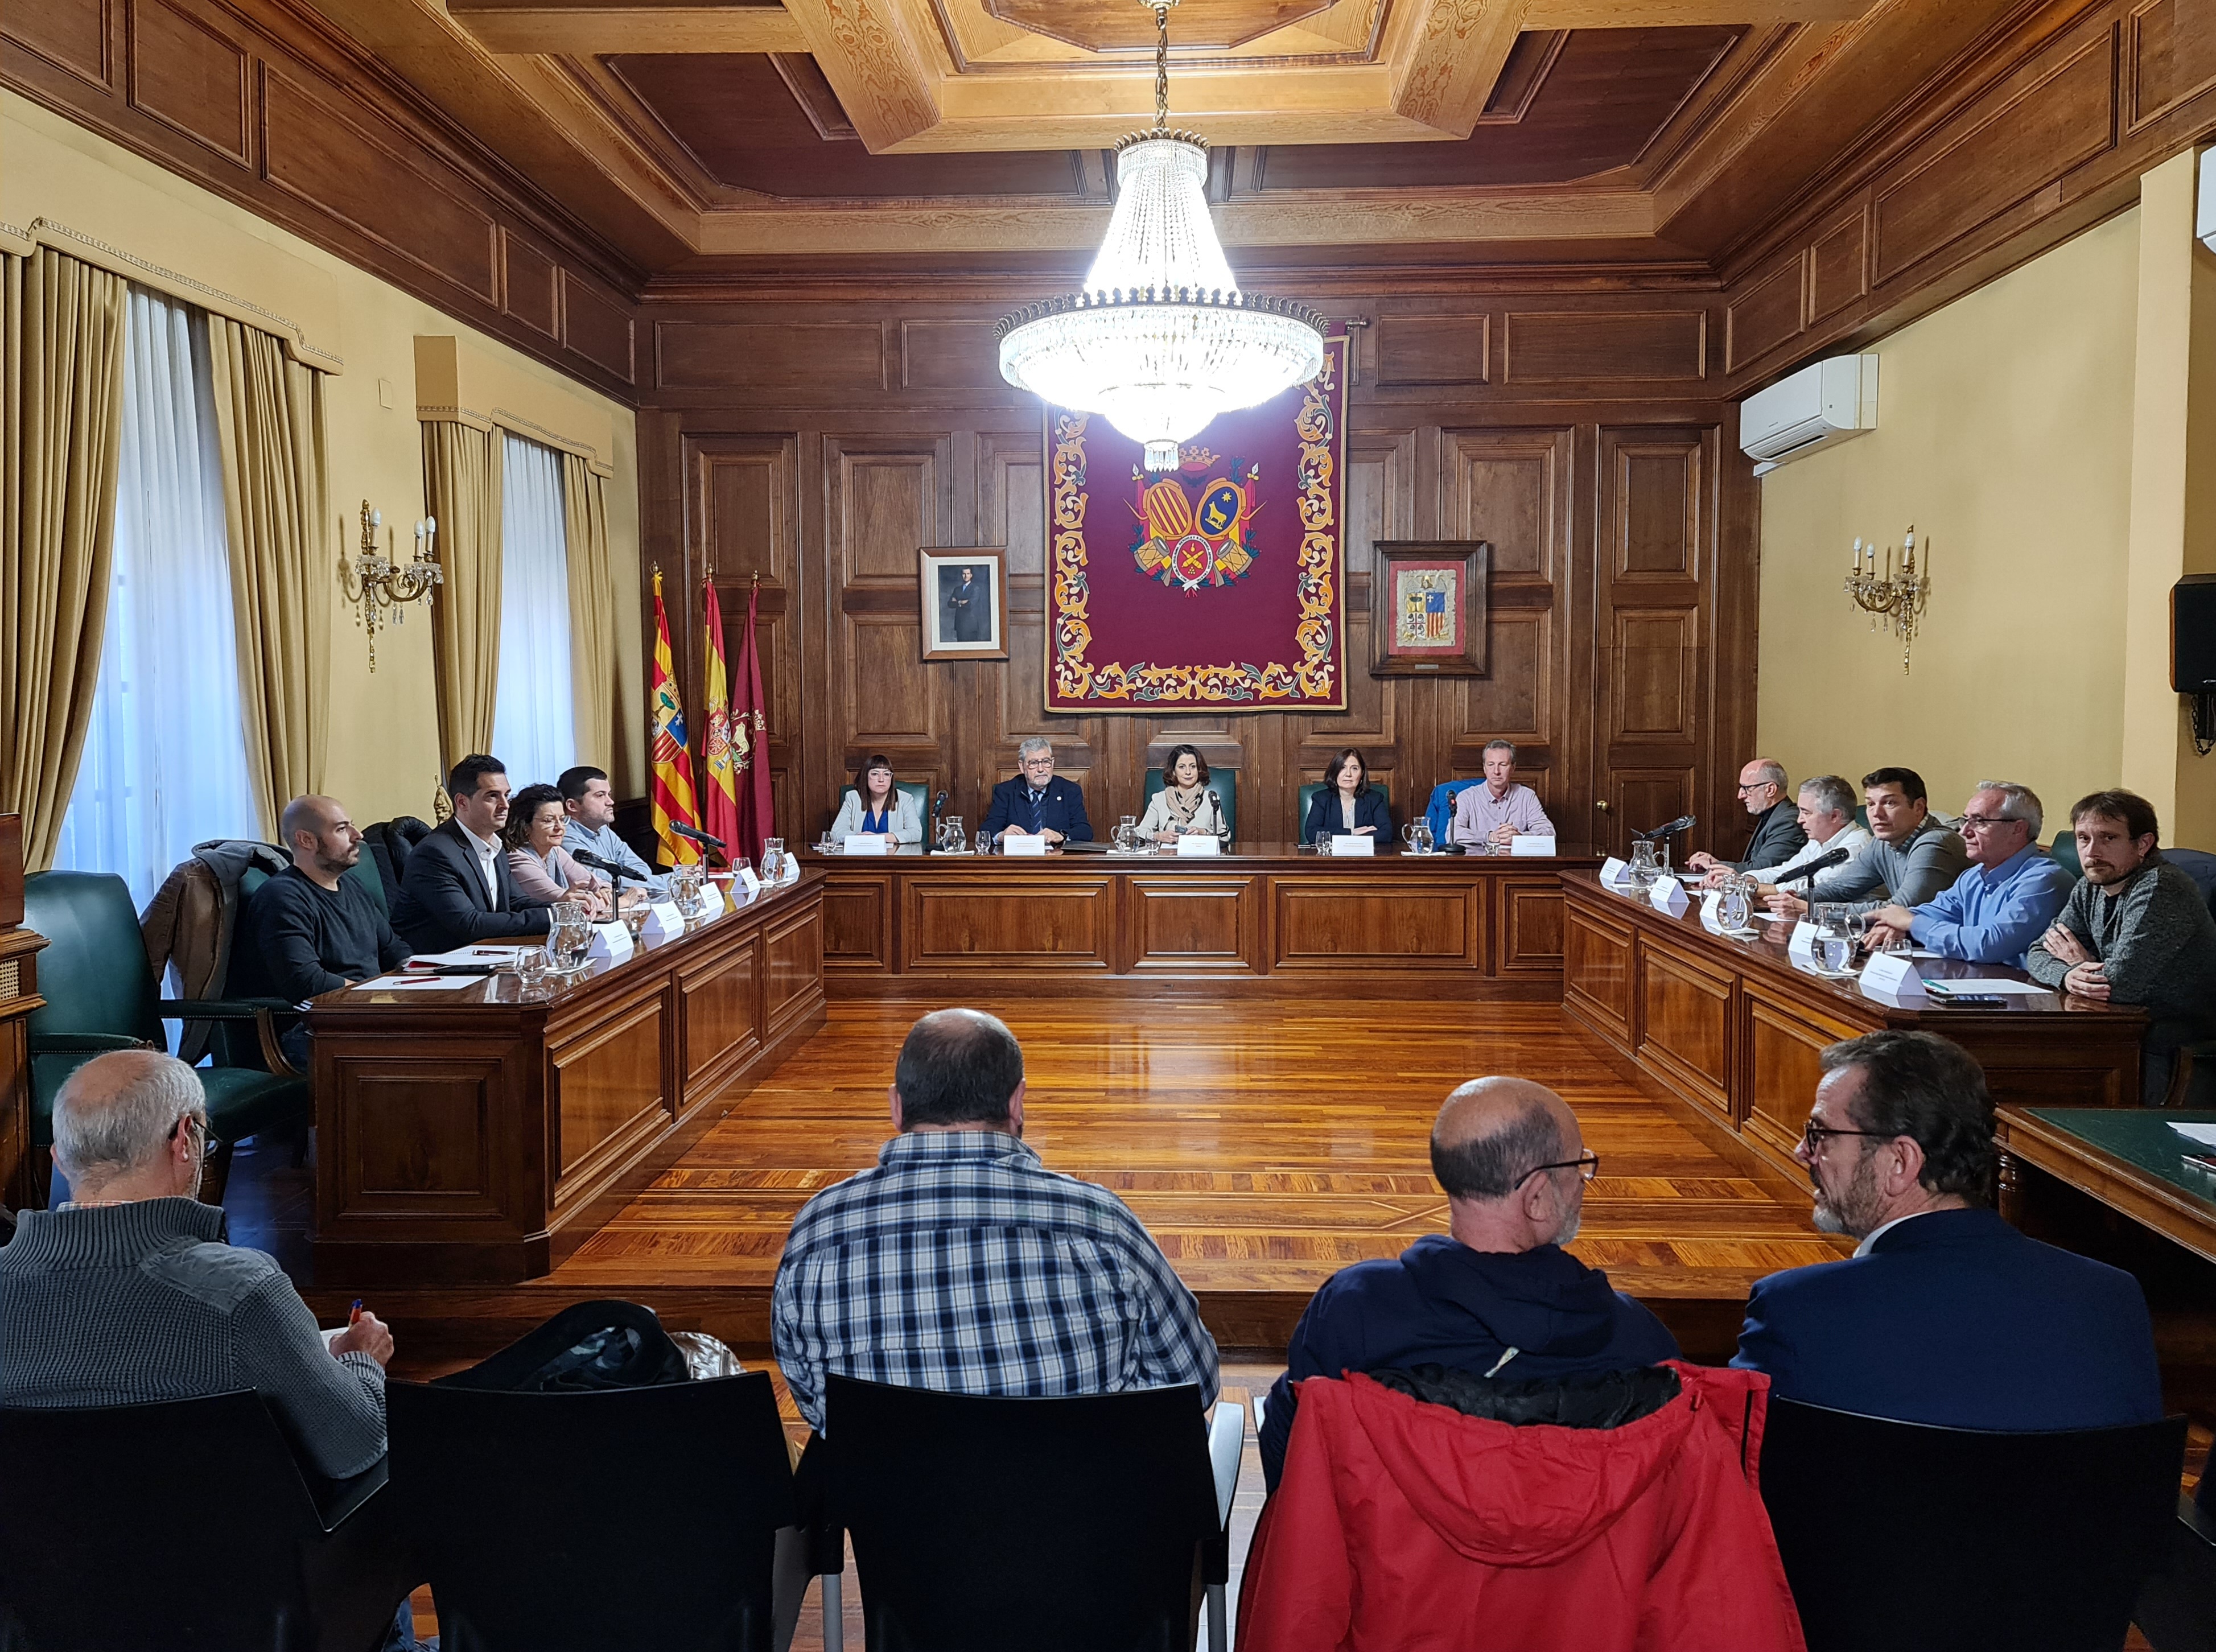 Avanza la propuesta de especializaciÃ³n del Campus de Teruel con nuevos estudios